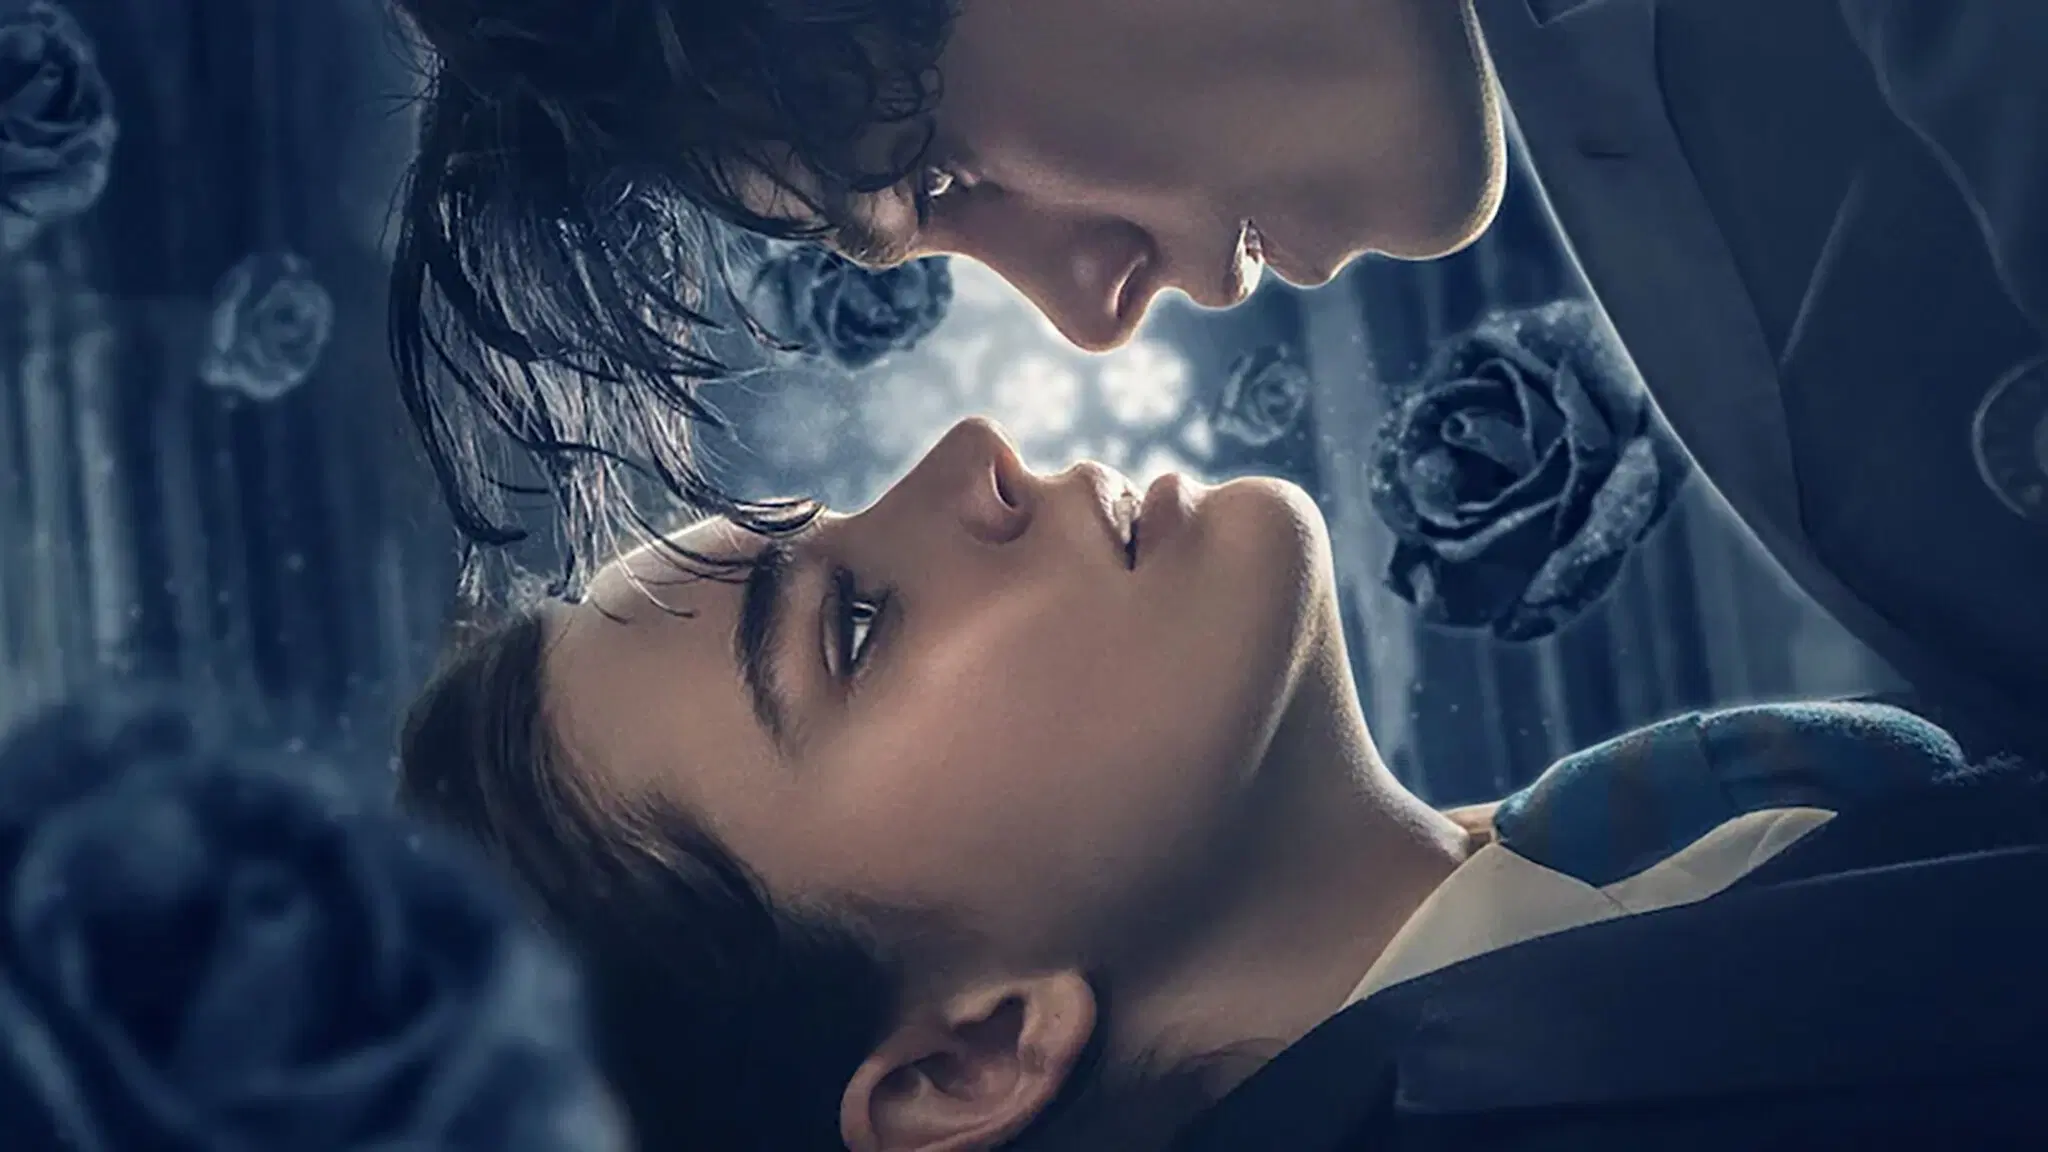 tearsmith 2048x1152 1 - Fabricant de Larmes : c'est quoi ce nouveau drame romantique poignant qui cartonne sur Netflix ?